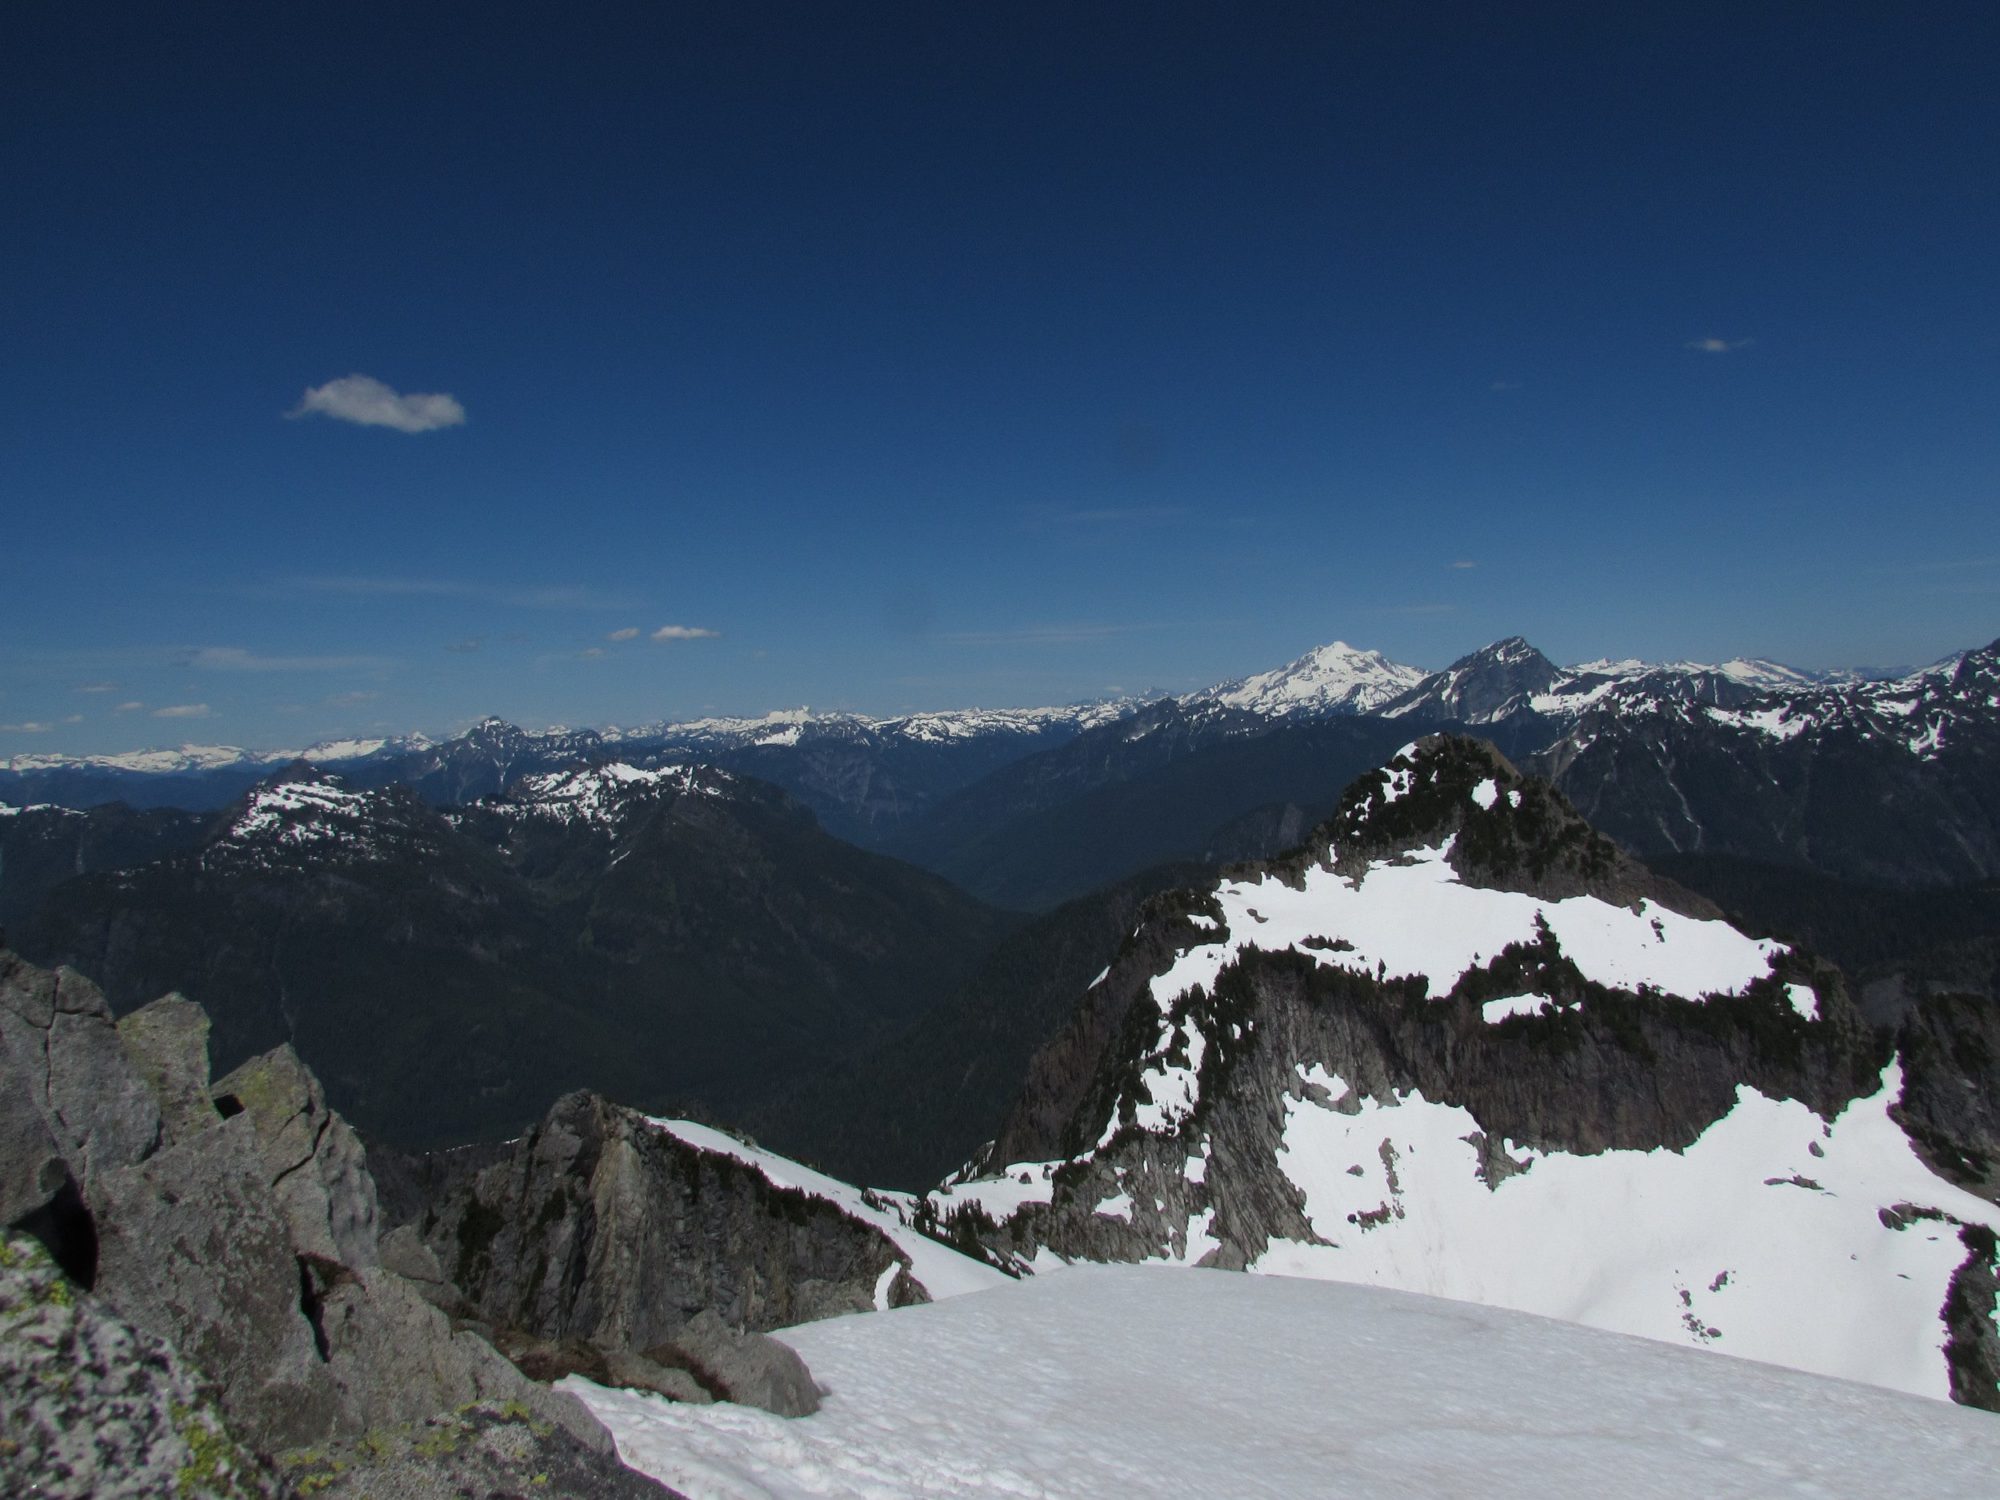 glacier peak from the top of vesper peak